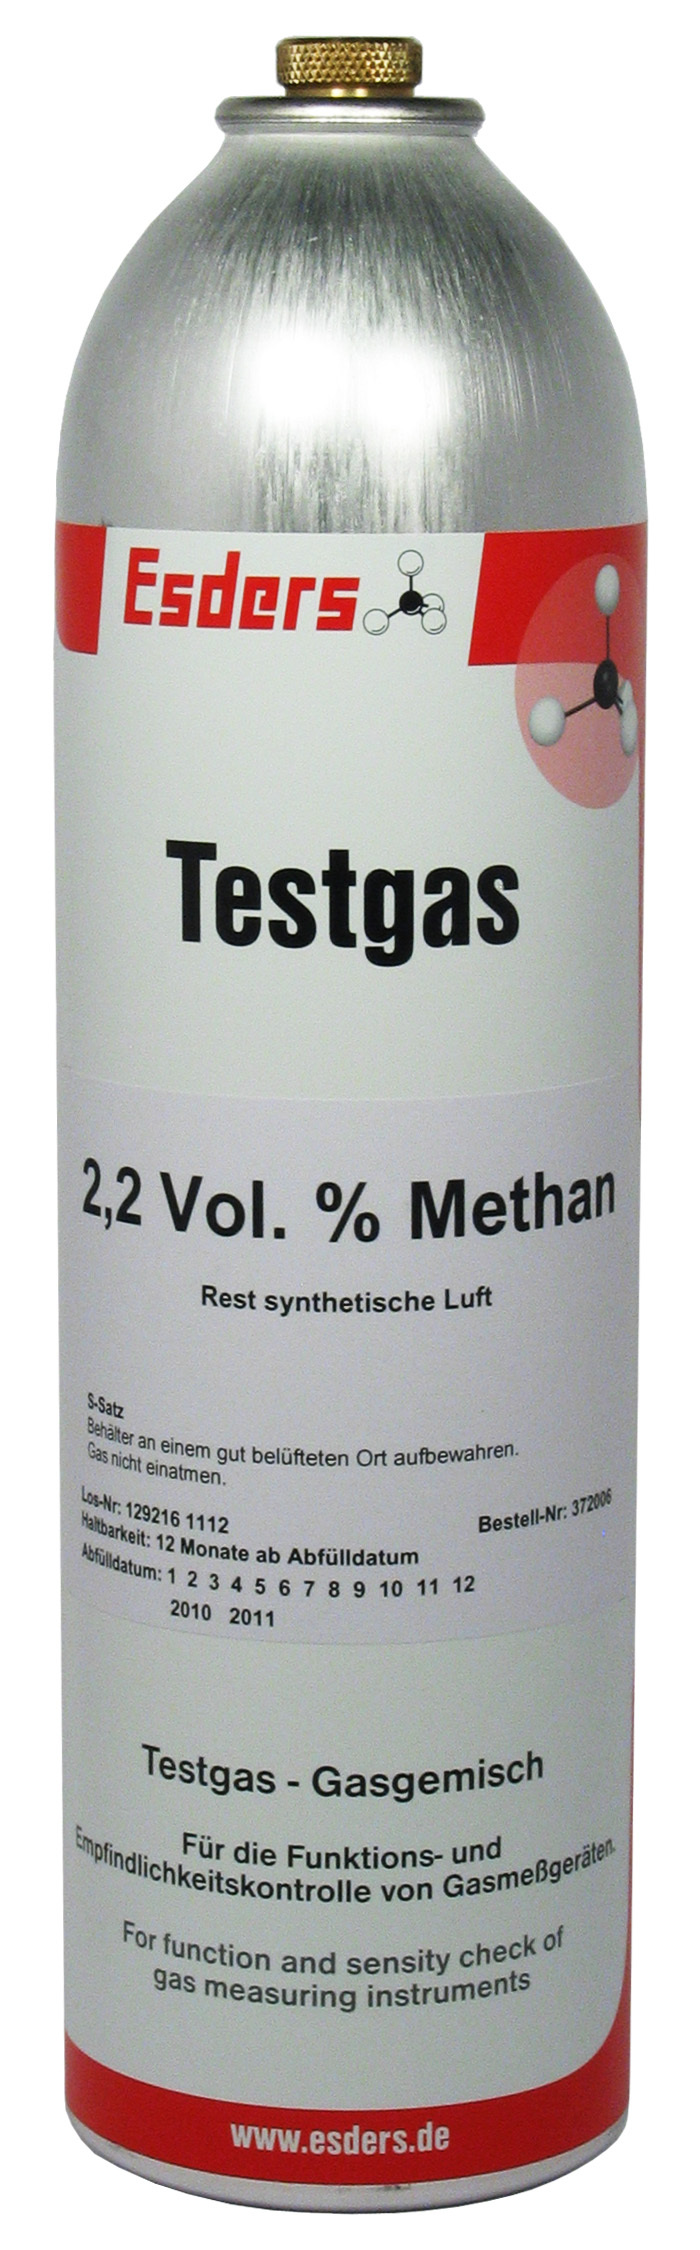 Test gas can 2,2 Vol.% methane 1 l - 12 bar